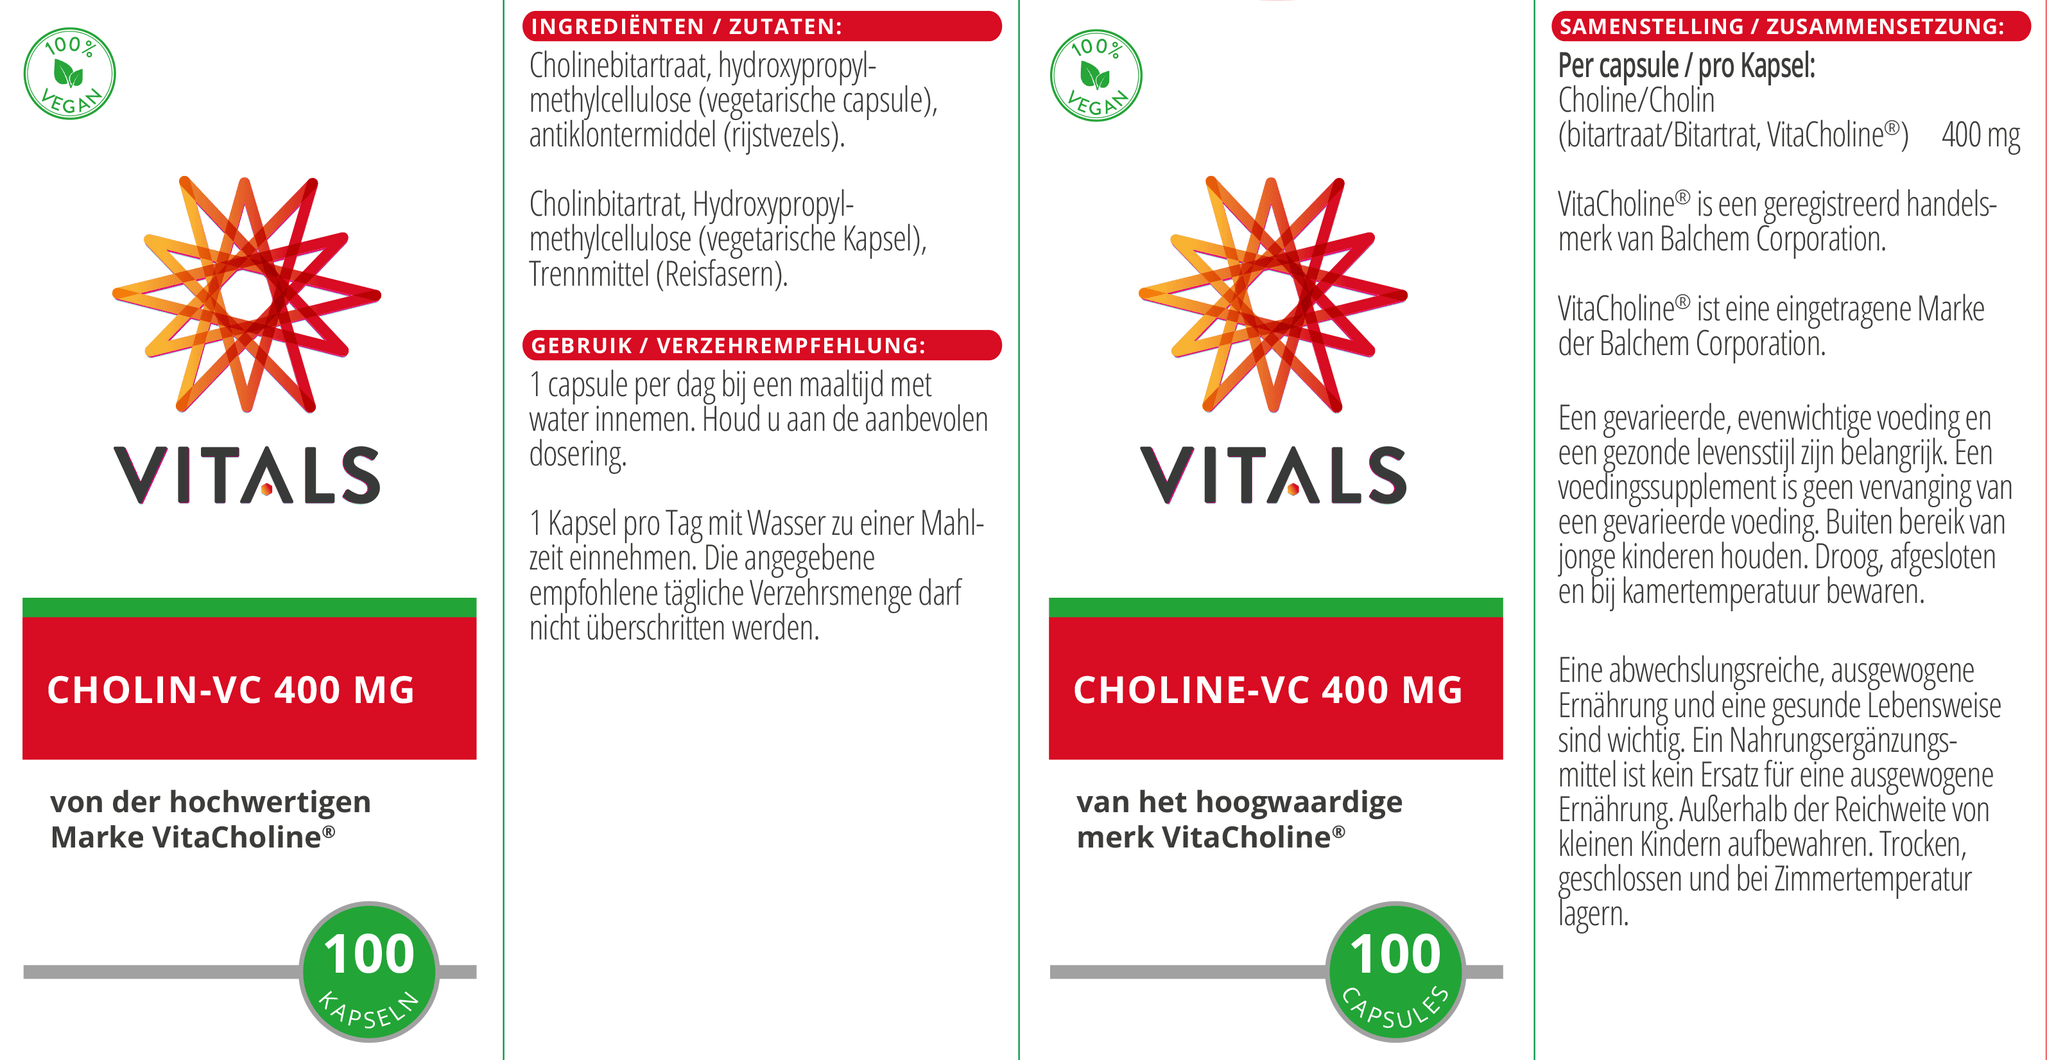 Choline-VC 400 mg - NowVitamins - Vitals - 8716717003945